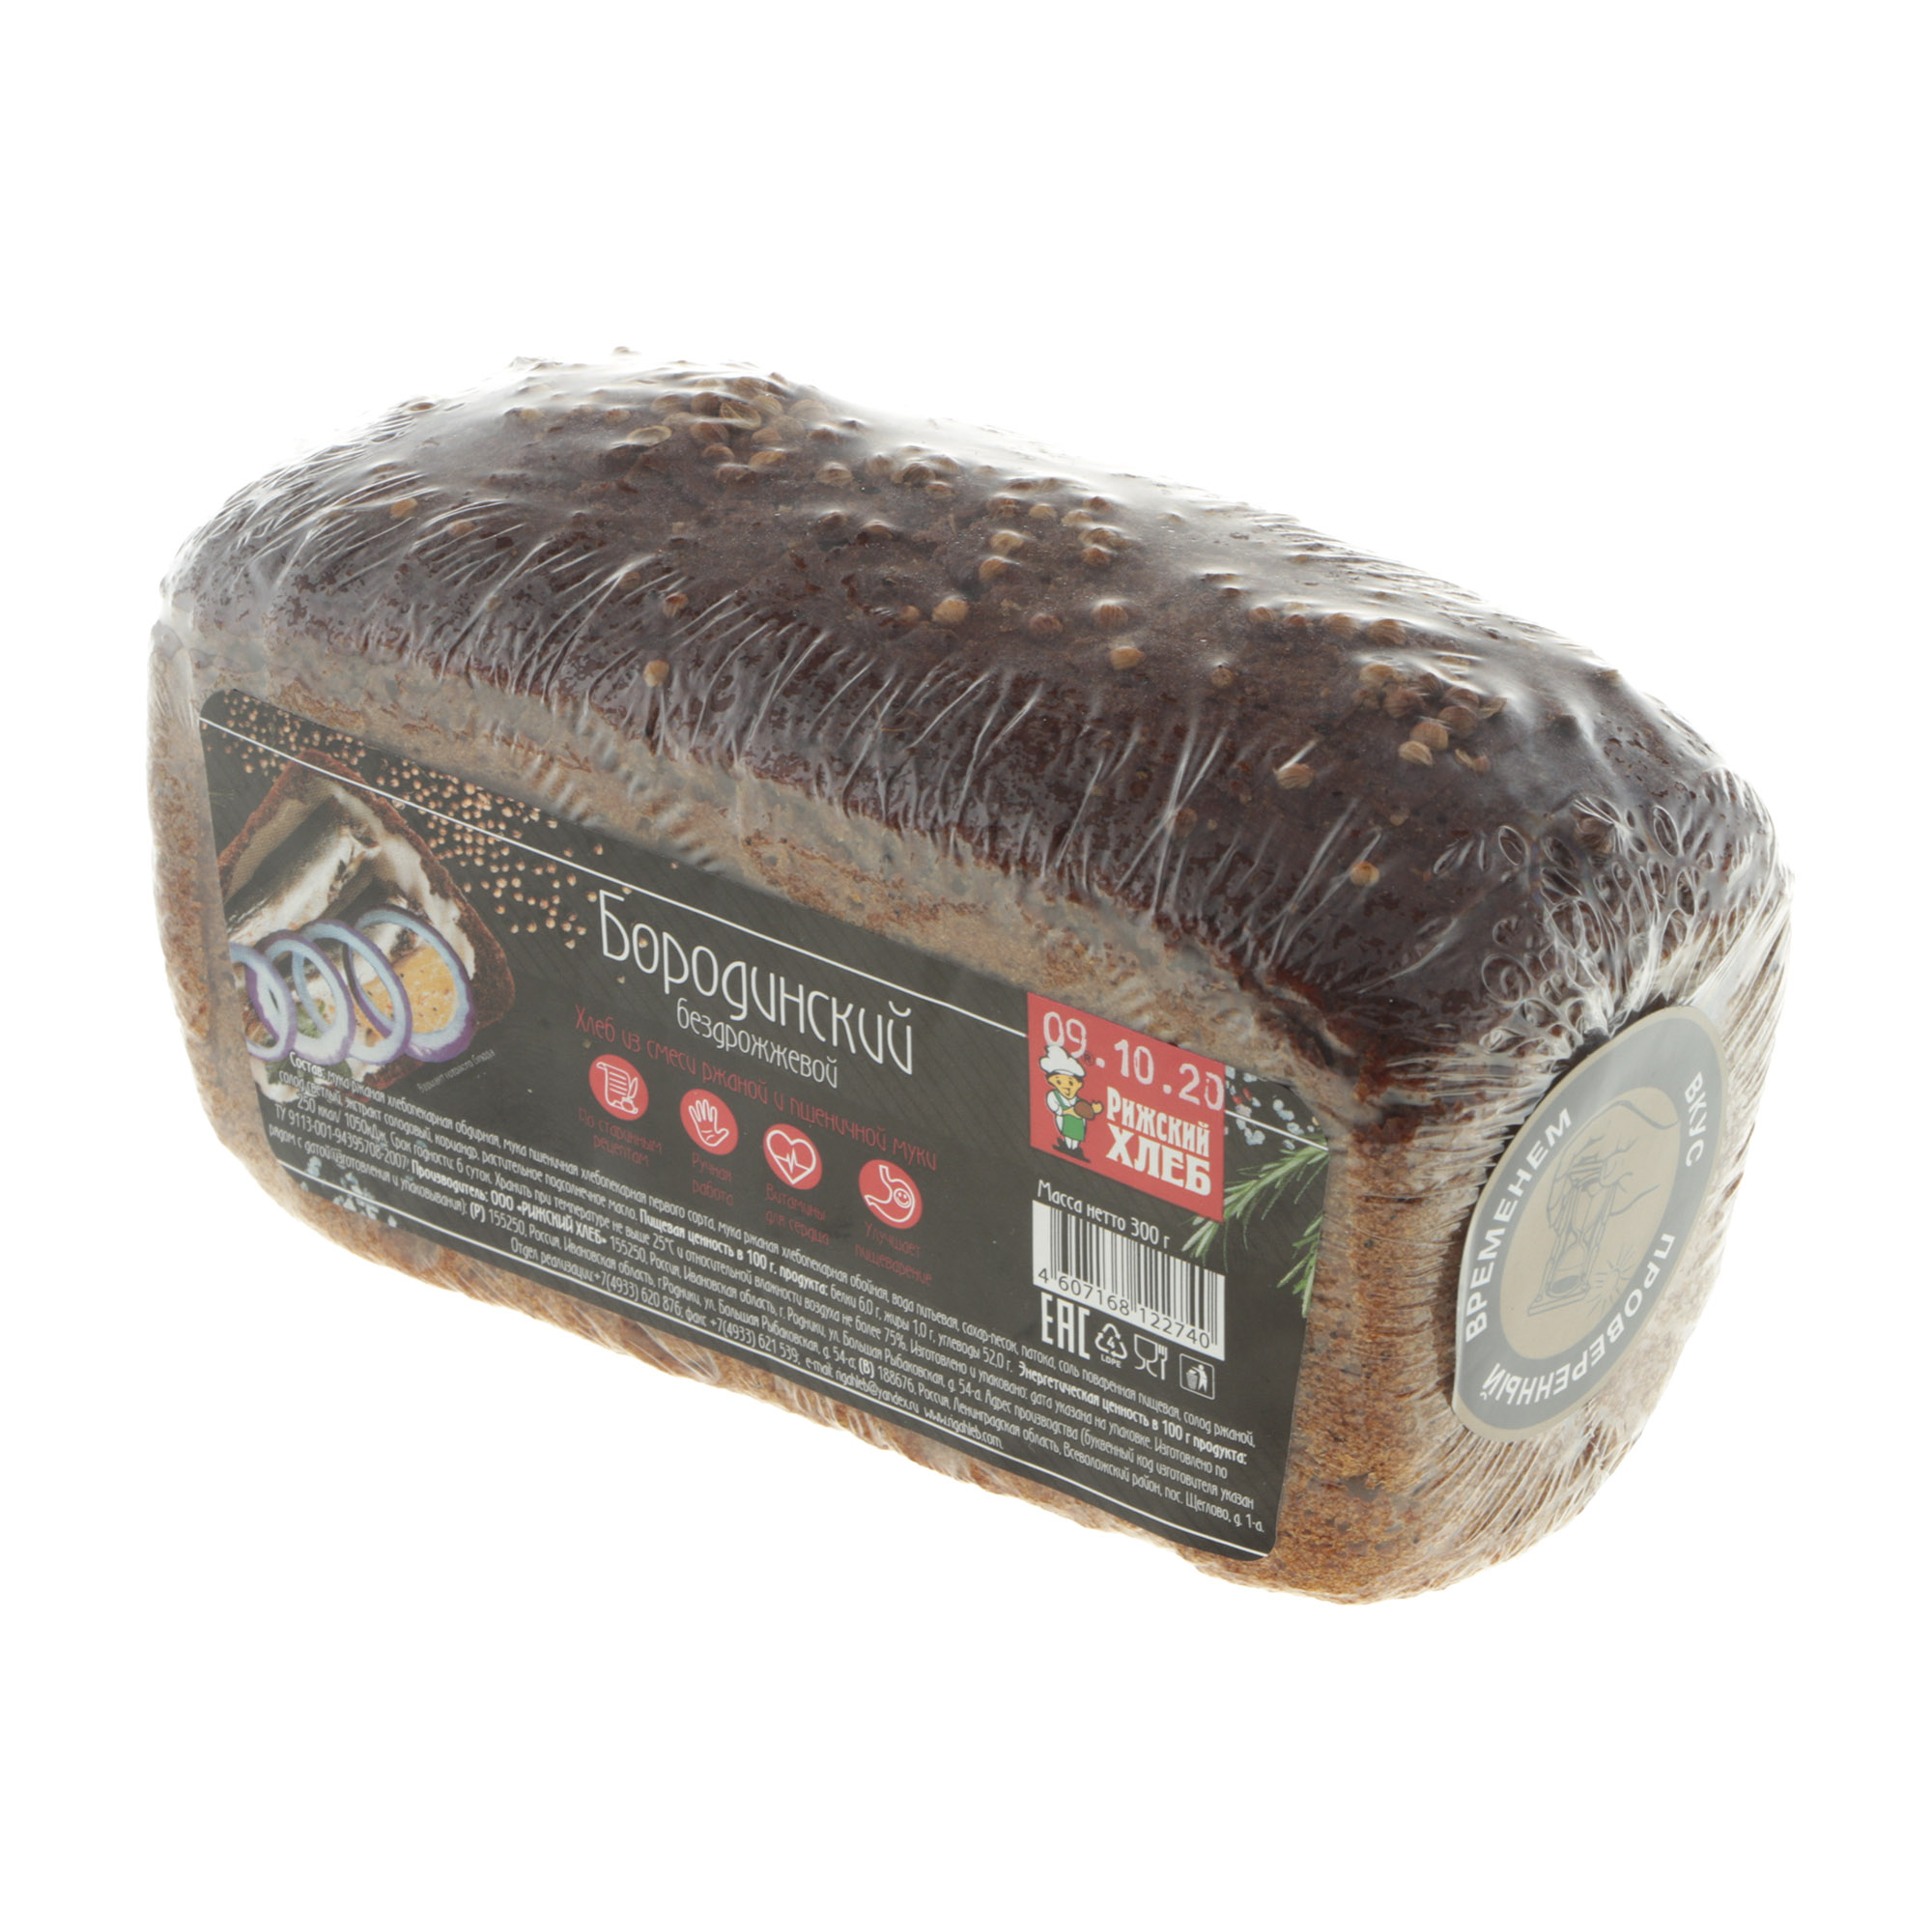 Хлеб Рижский хлеб бородинский 300 г хлеб рижский хлеб полбяной цельнозерновой 270 г